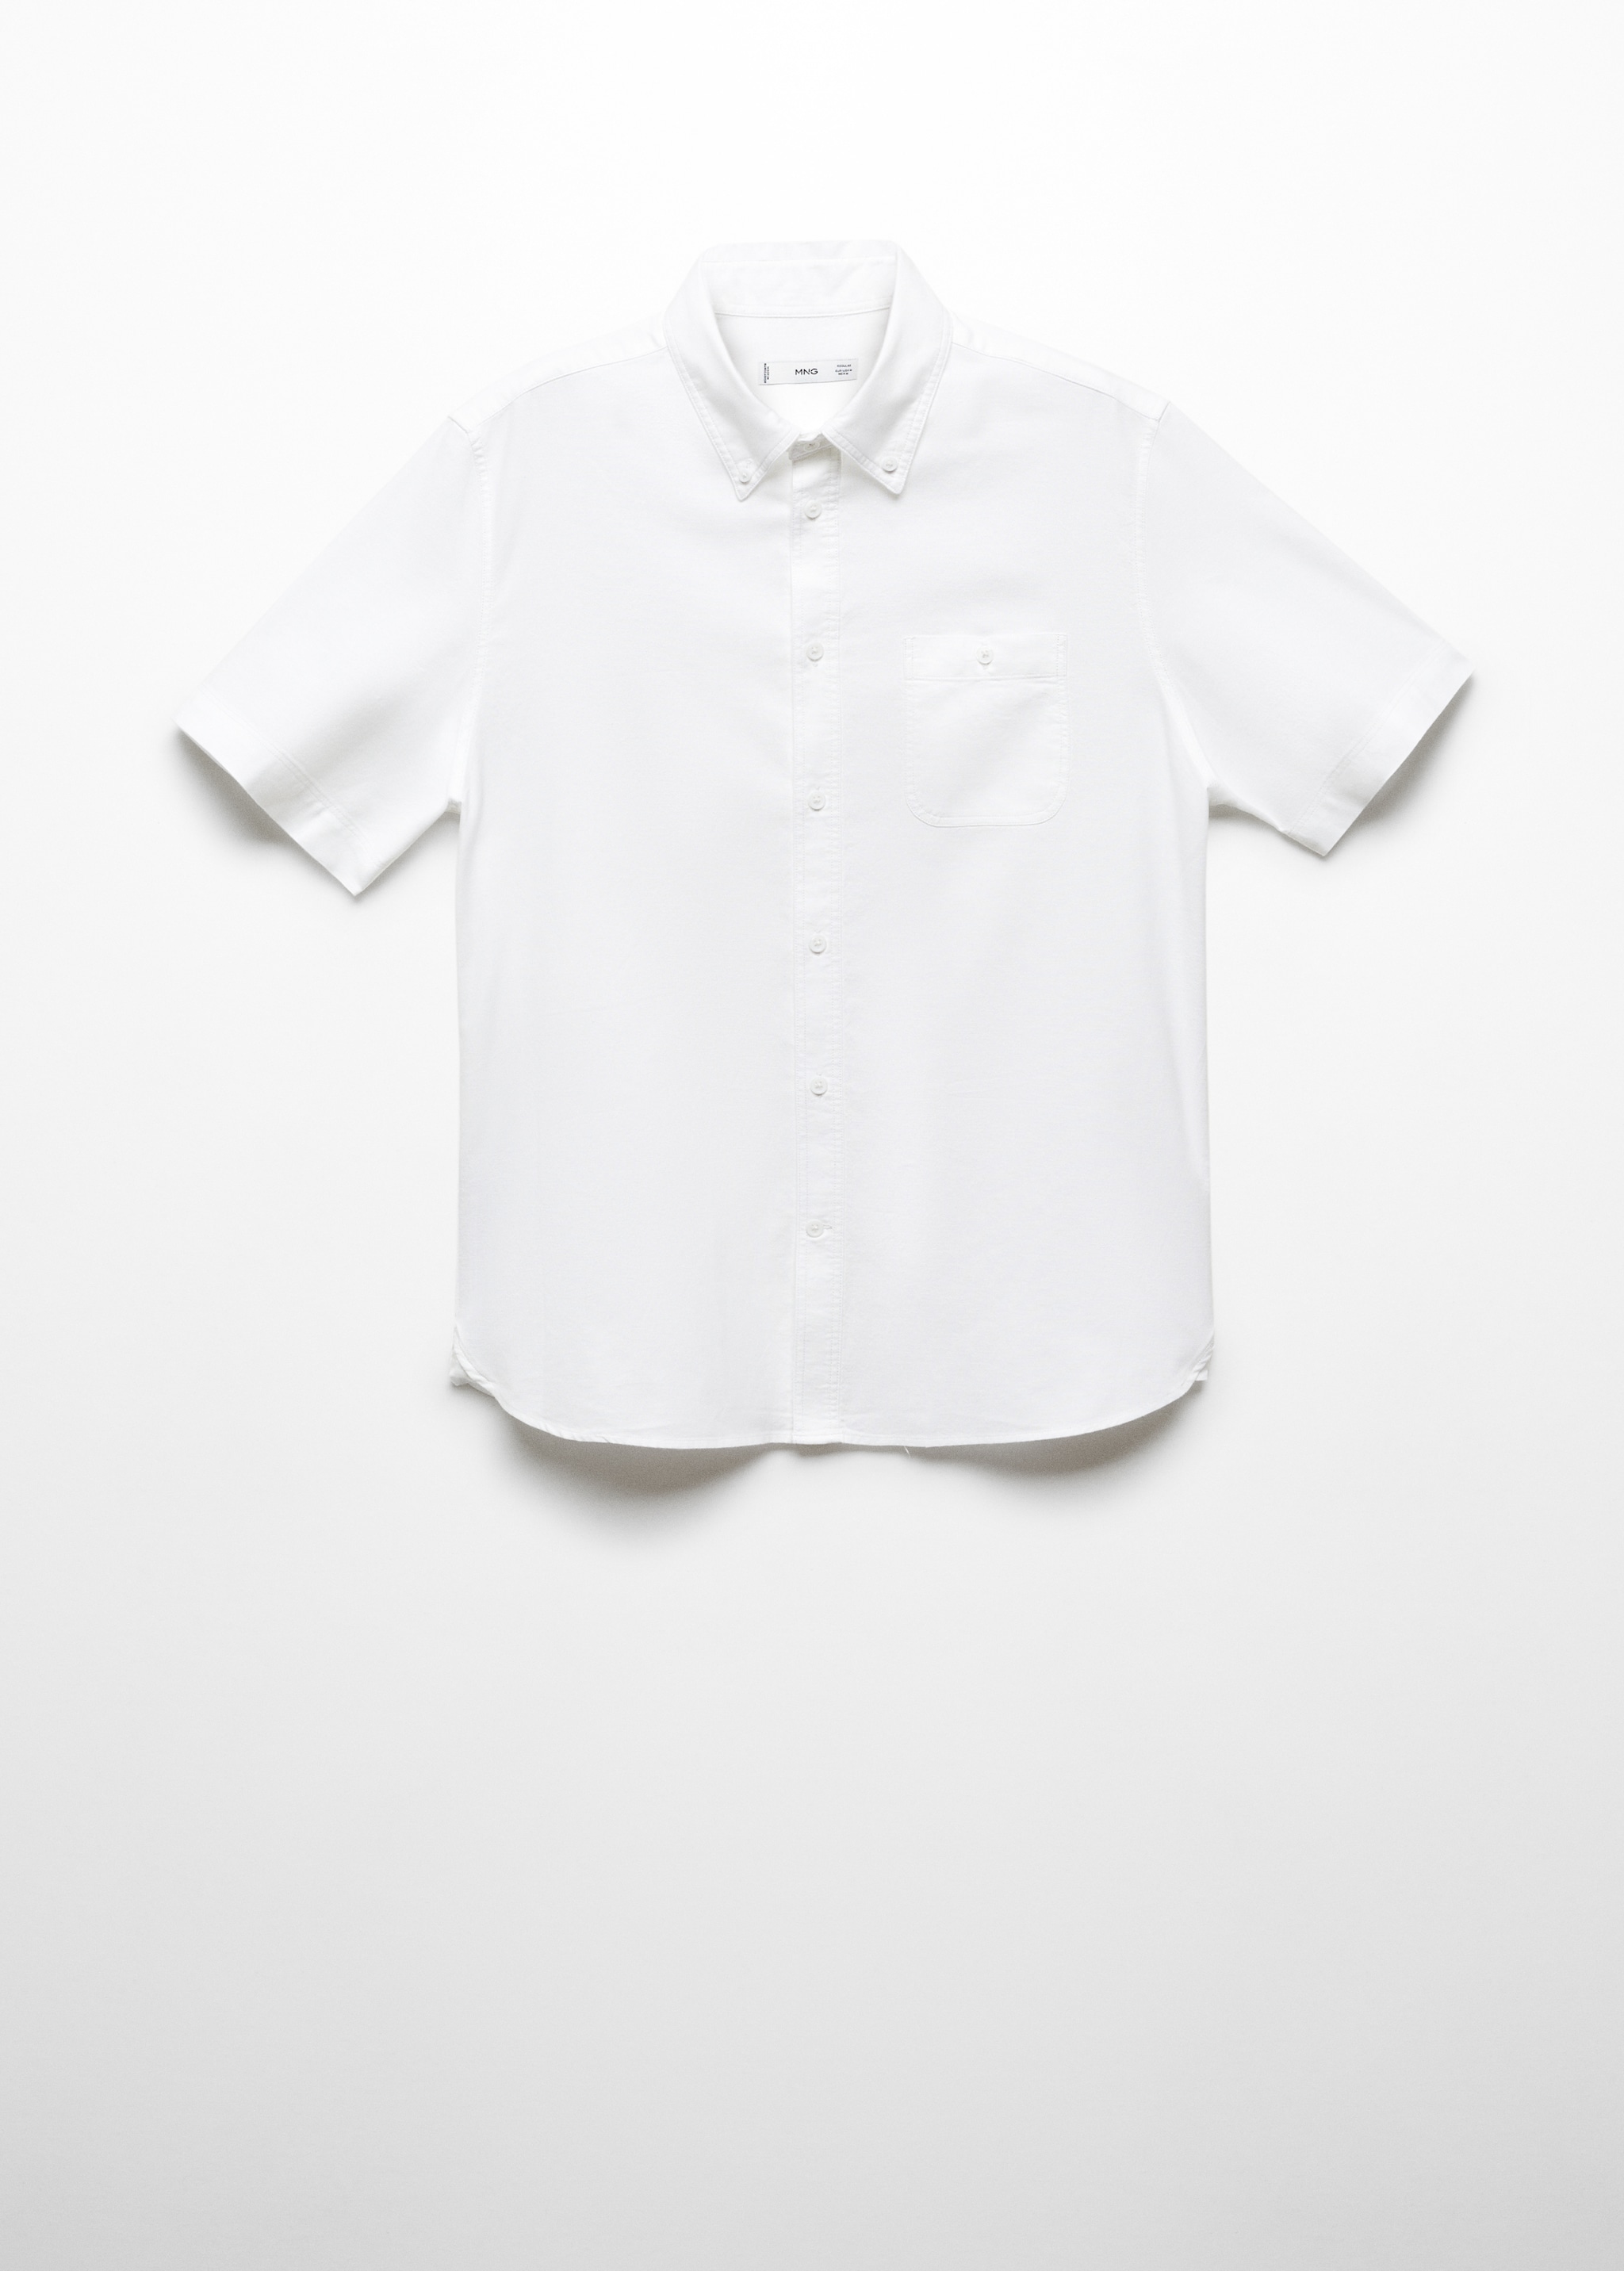 Рубашка 100% хлопок regular fit  - Изделие без модели